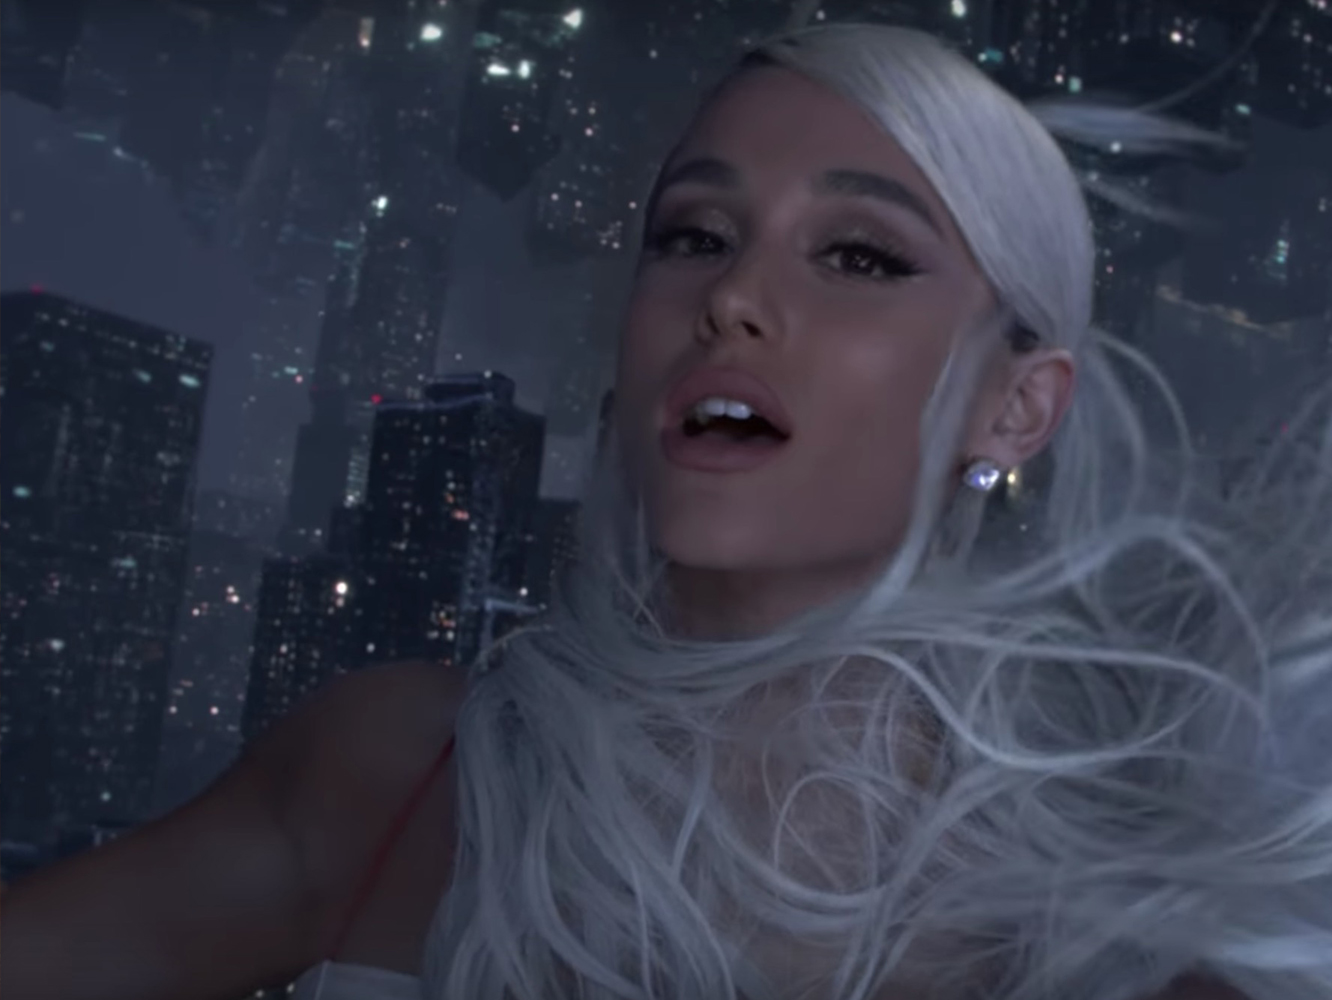  Ariana Grande, a lo bestia con su comeback: espectacular single y vídeo para ‘No Tears Left To Cry’